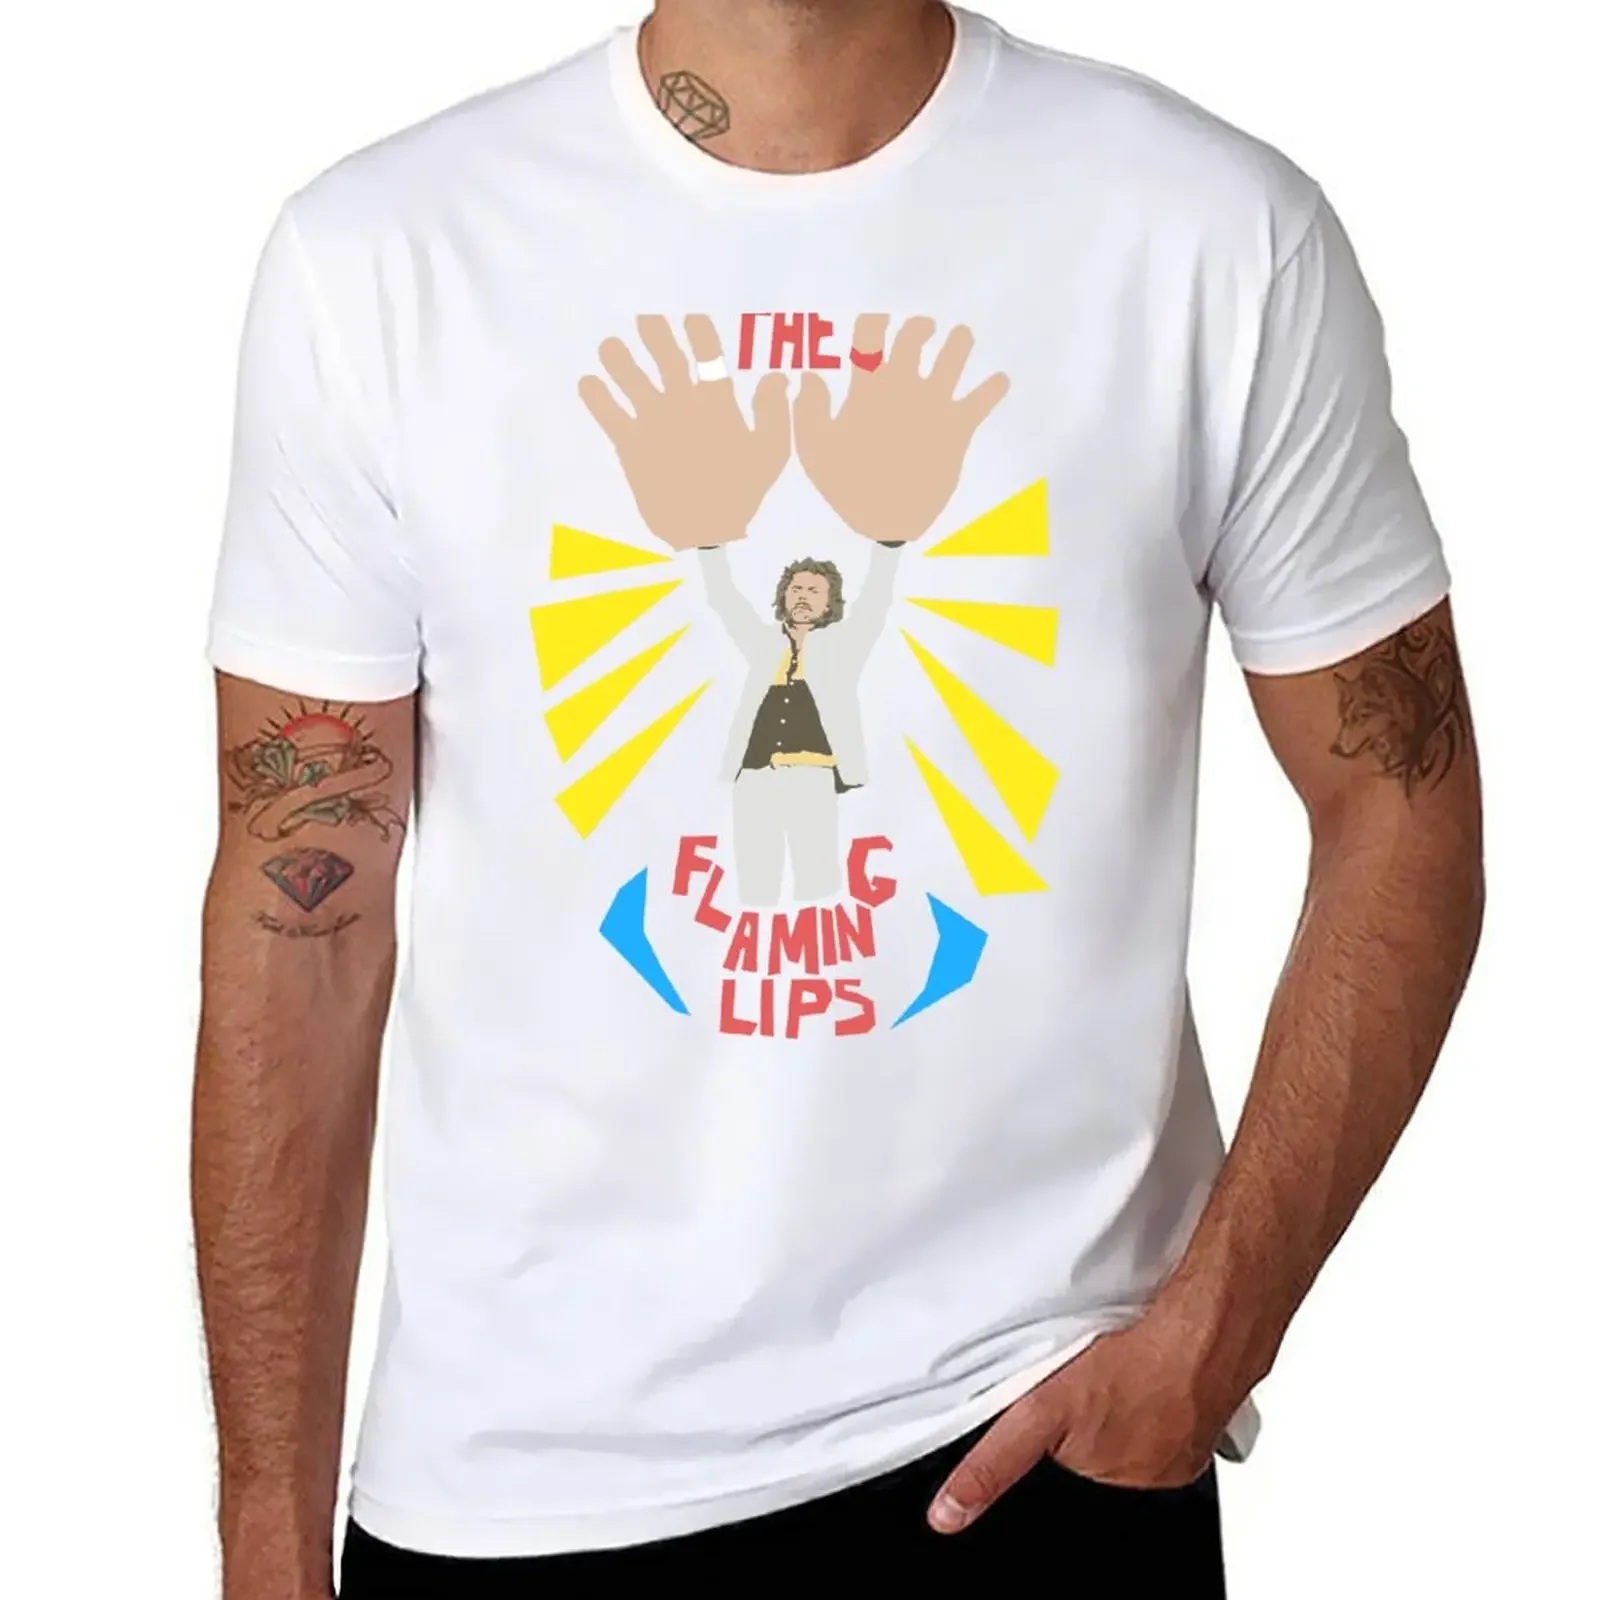 

Футболка с рисунком «пламеняющие губы» с большими руками, одежда в эстетике, простая аниме одежда, мужские футболки с графическим рисунком, хип-хоп